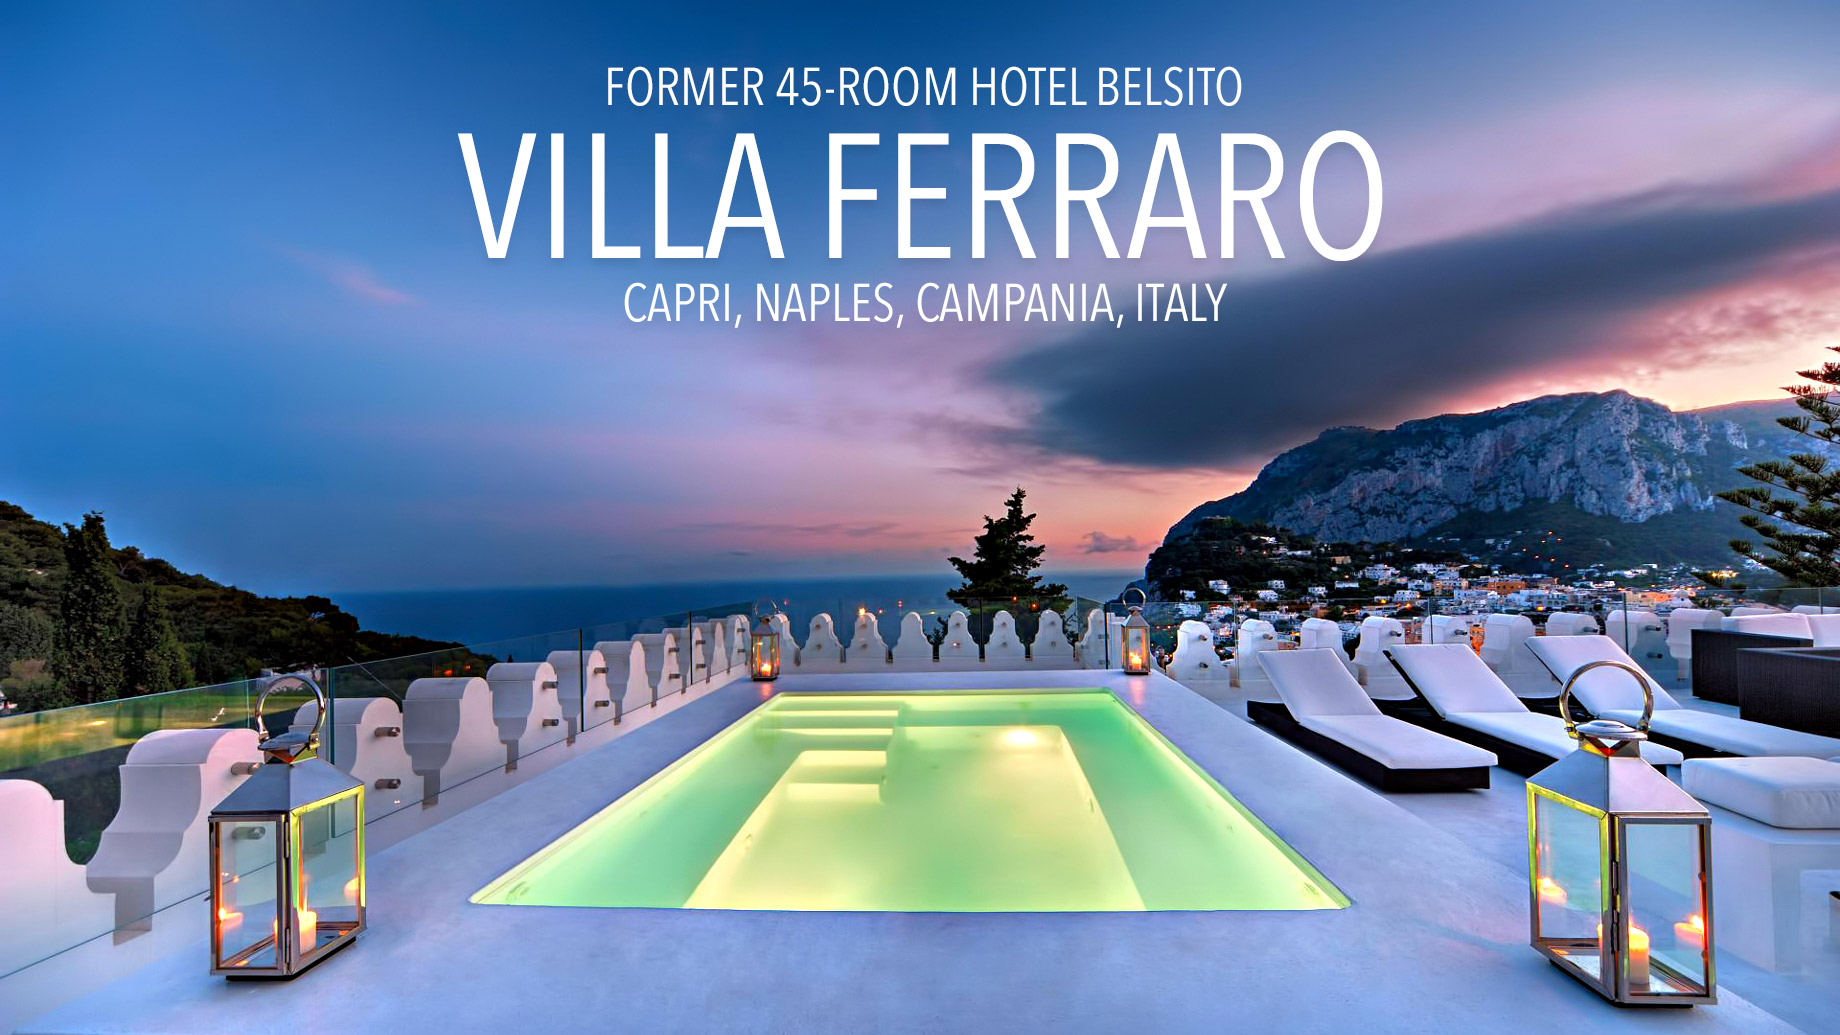 Transforming the 45-Room Hotel Belsito into the Private Villa Ferraro in Capri, Italy